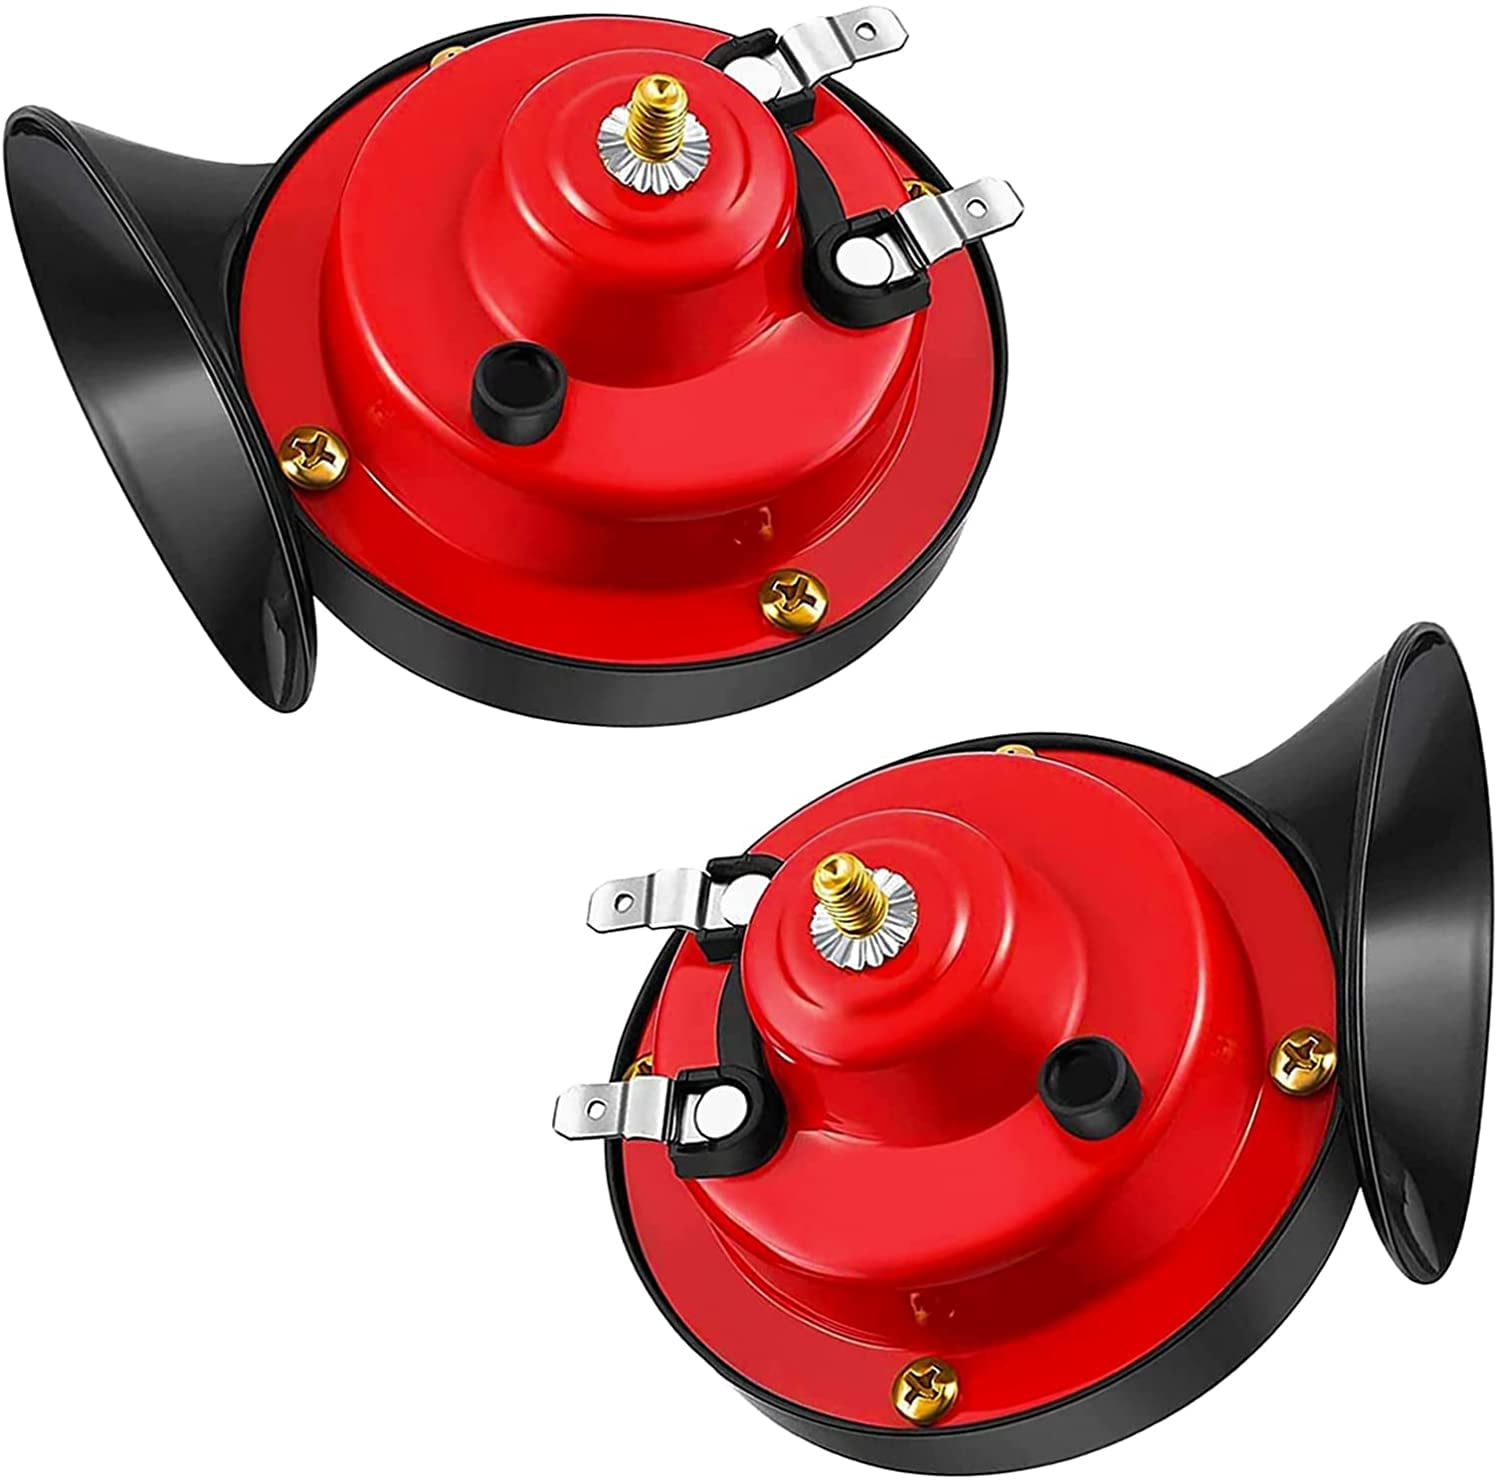 2pcs 300db Horn für LKW Die lauteste laute elektrische S Horn Doppel Horn  Sound